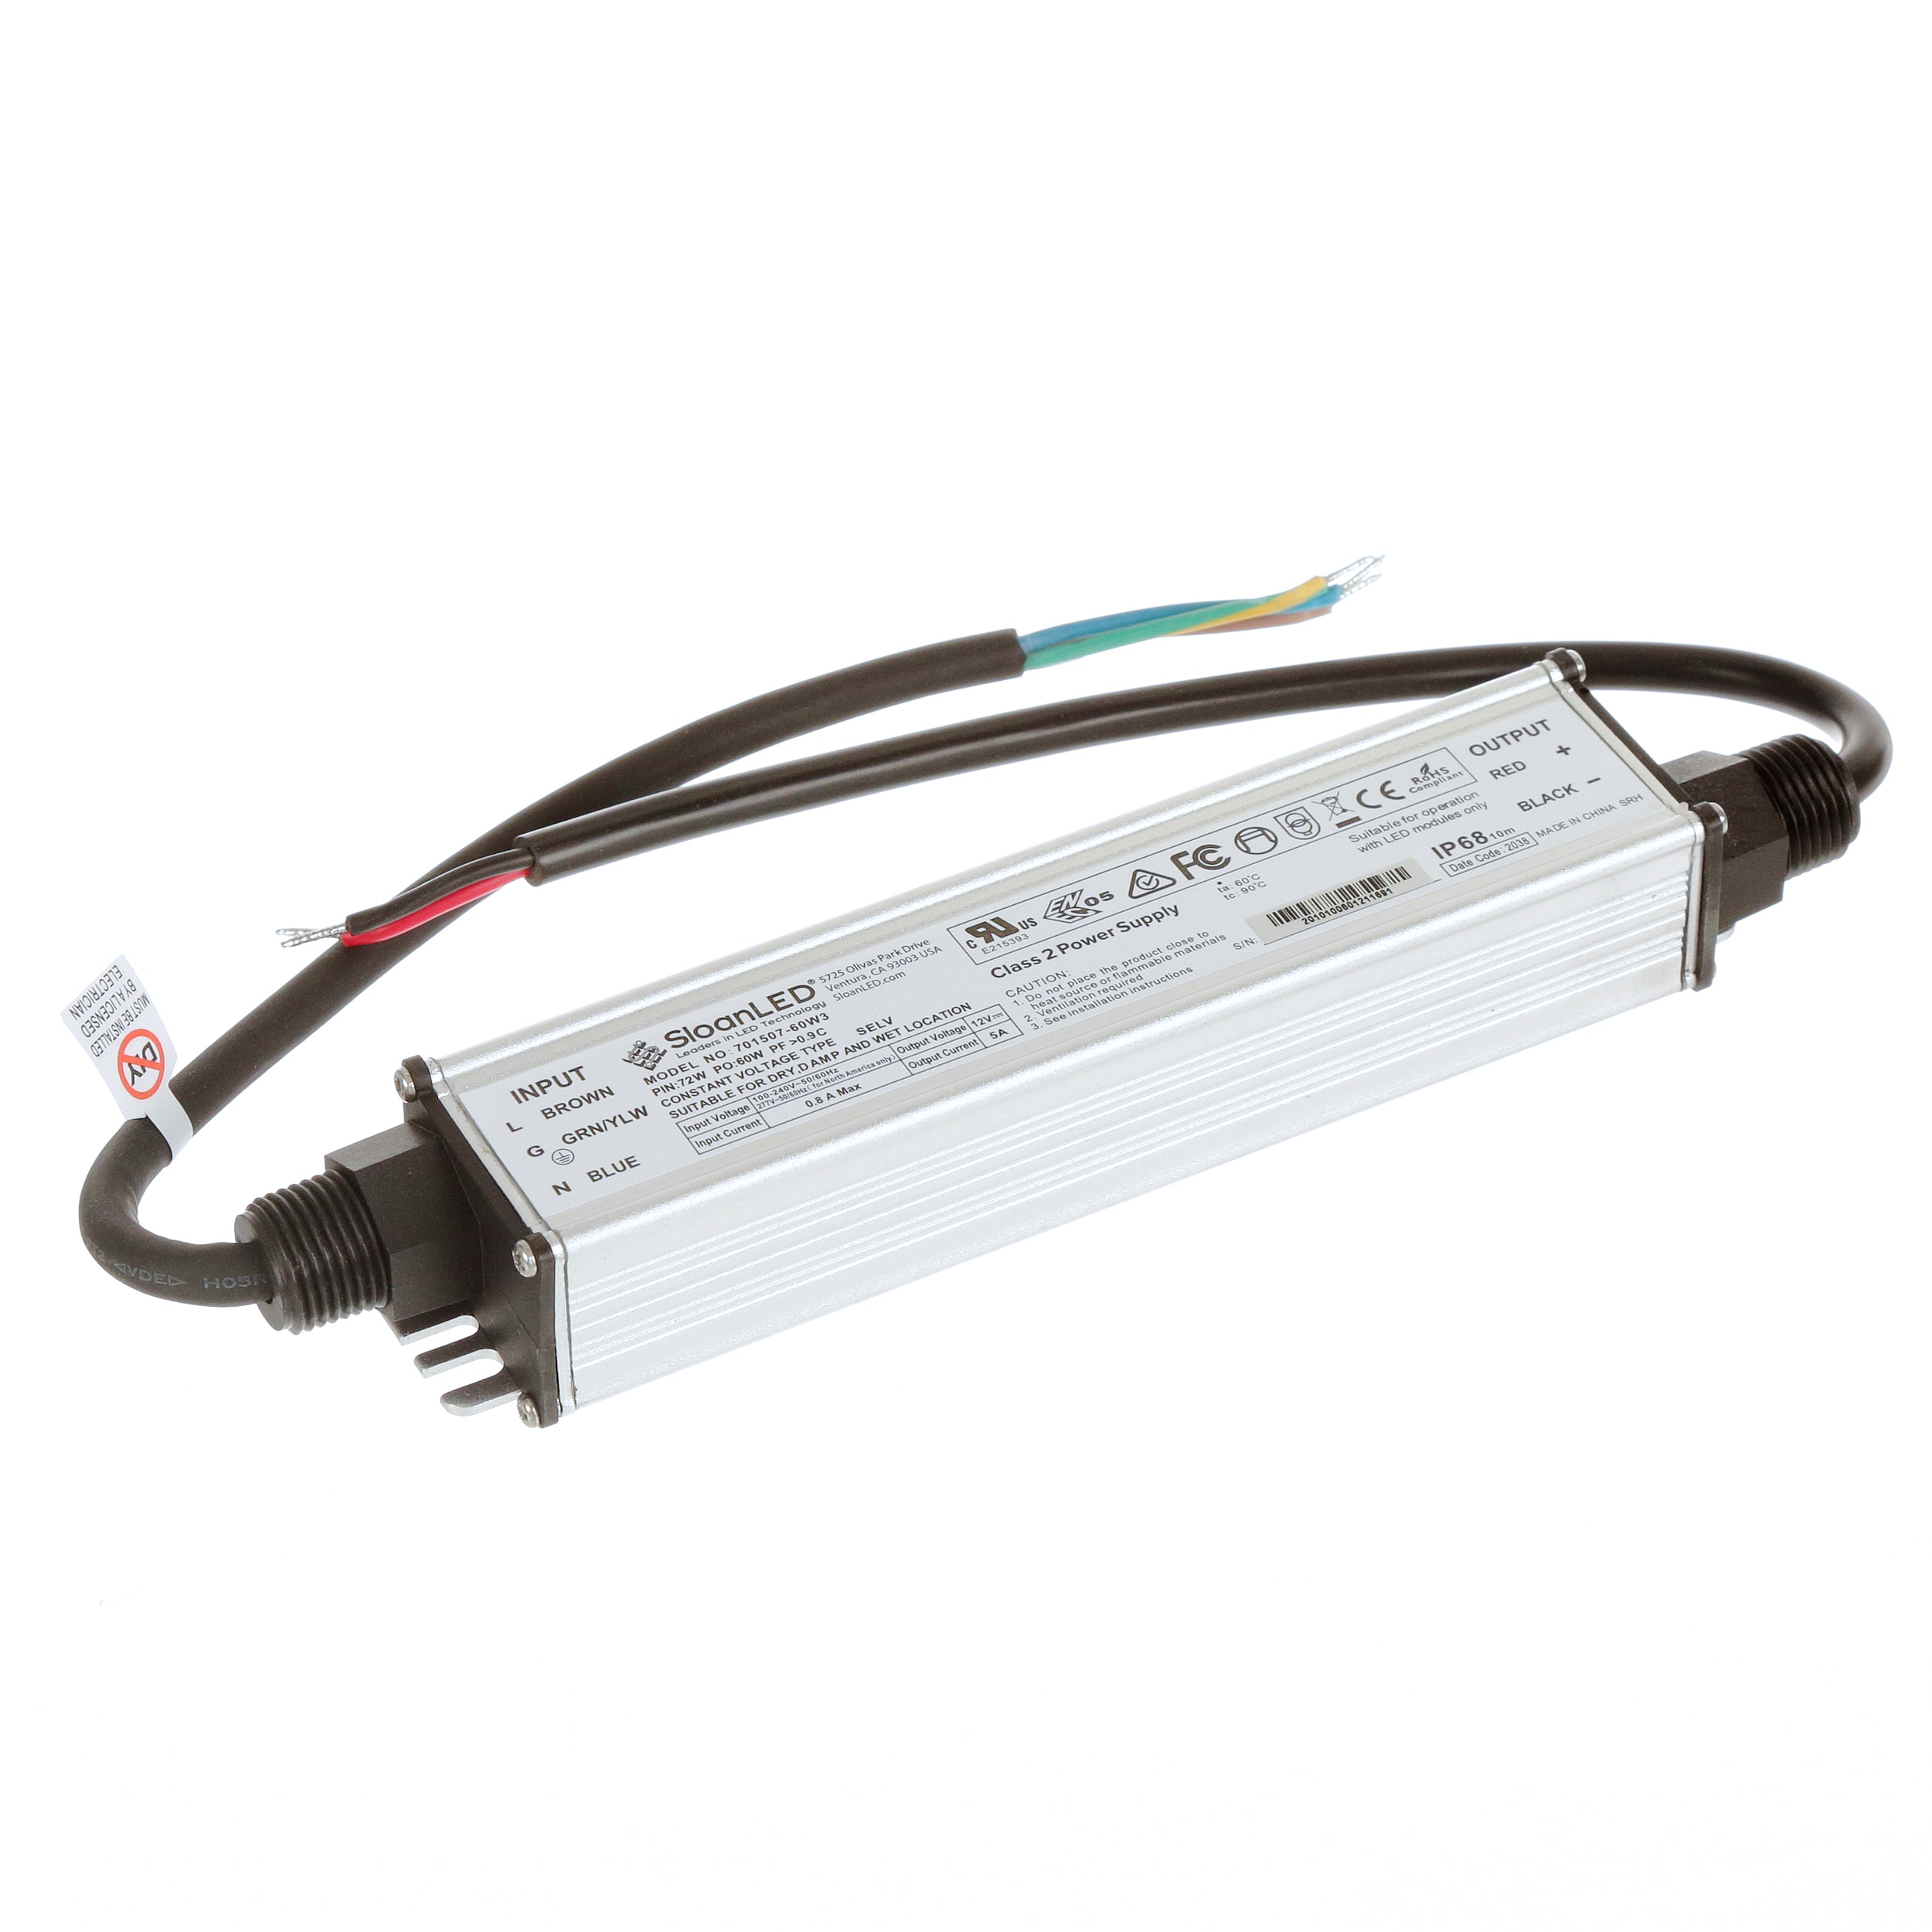 Led light strip power supply 12v Part# 701507 Sloan 